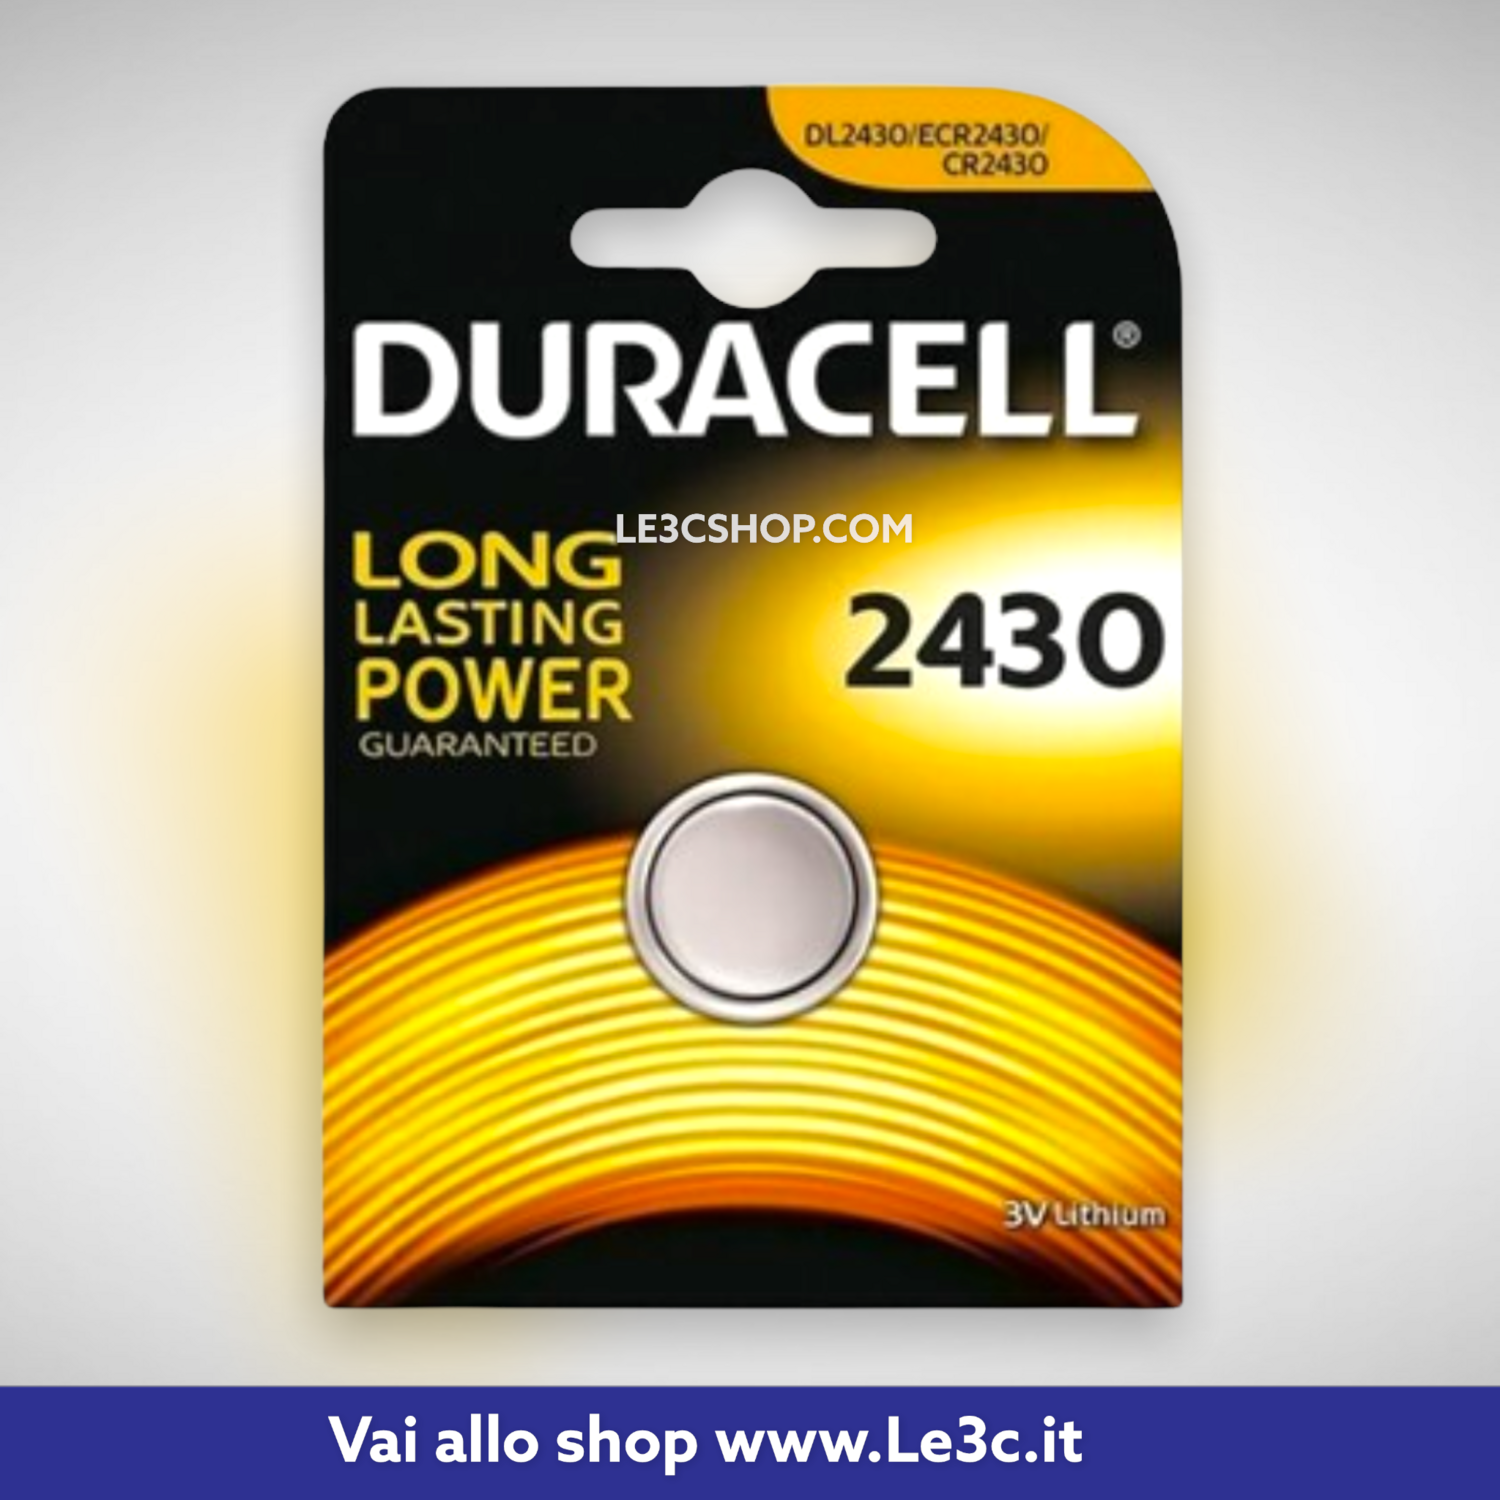 Batteria 2430 Duracell Plus Power: Potenza Duratura per Tutti i Tuoi Dispositivi Elettronici